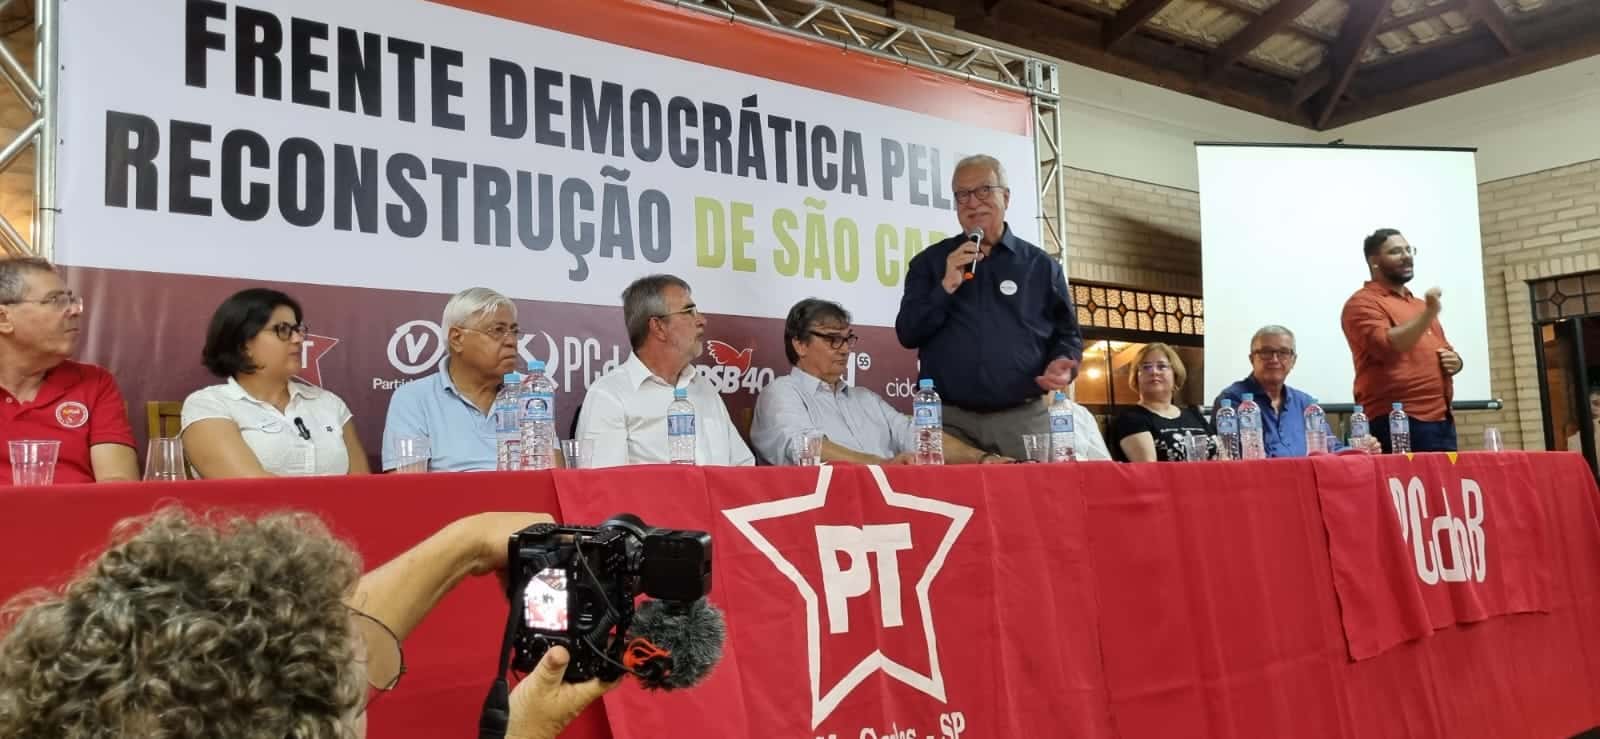 Lançamento de Frente Democrática pela Reconstrução de São Carlos reúne mais de 500 pessoas